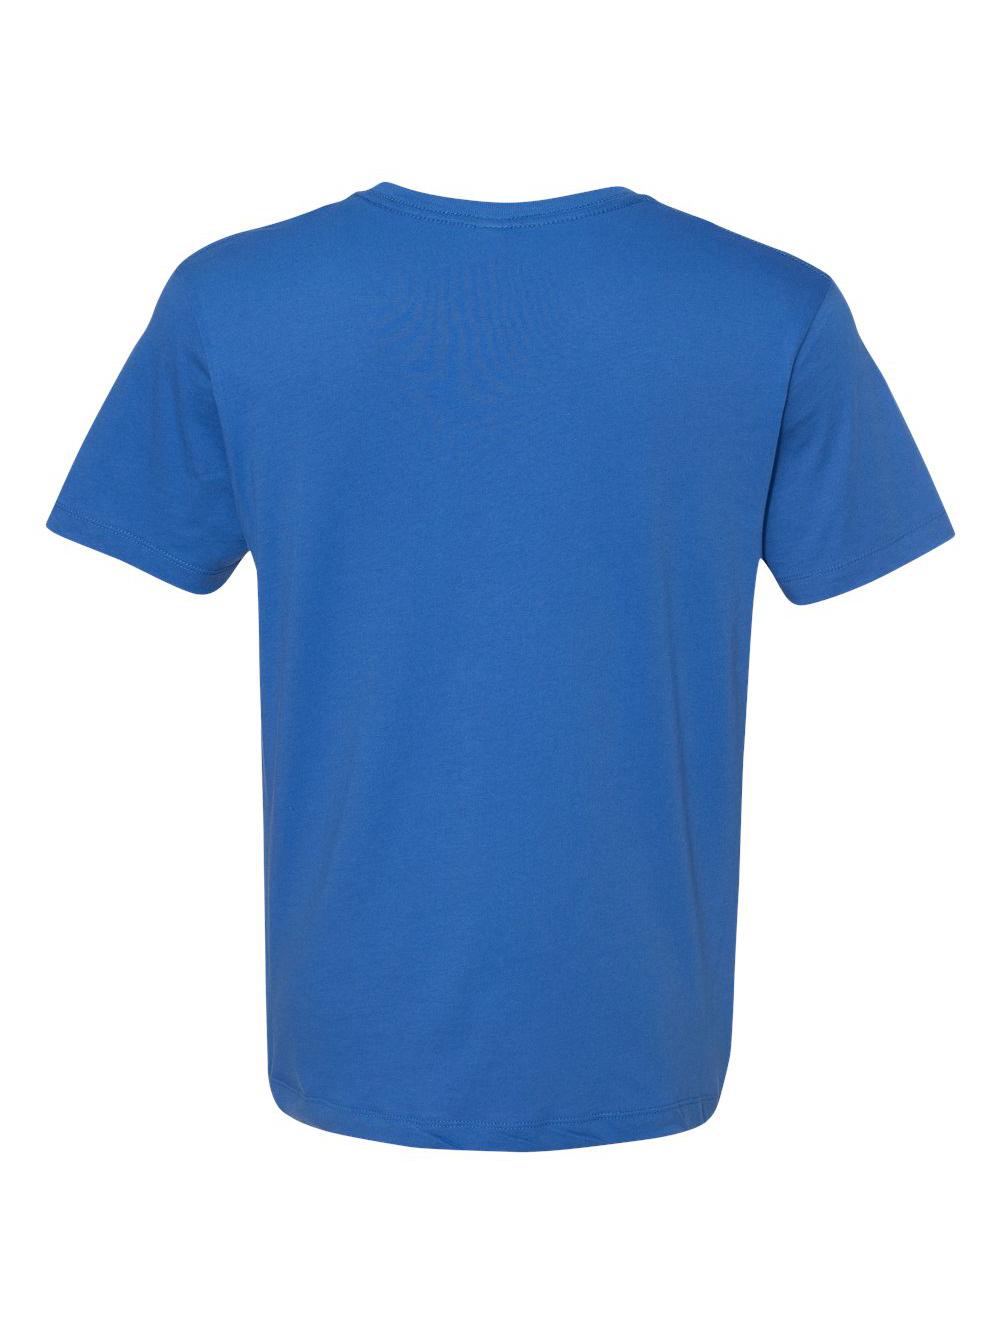 Unisex Go-To T-Shirt - image 3 of 3